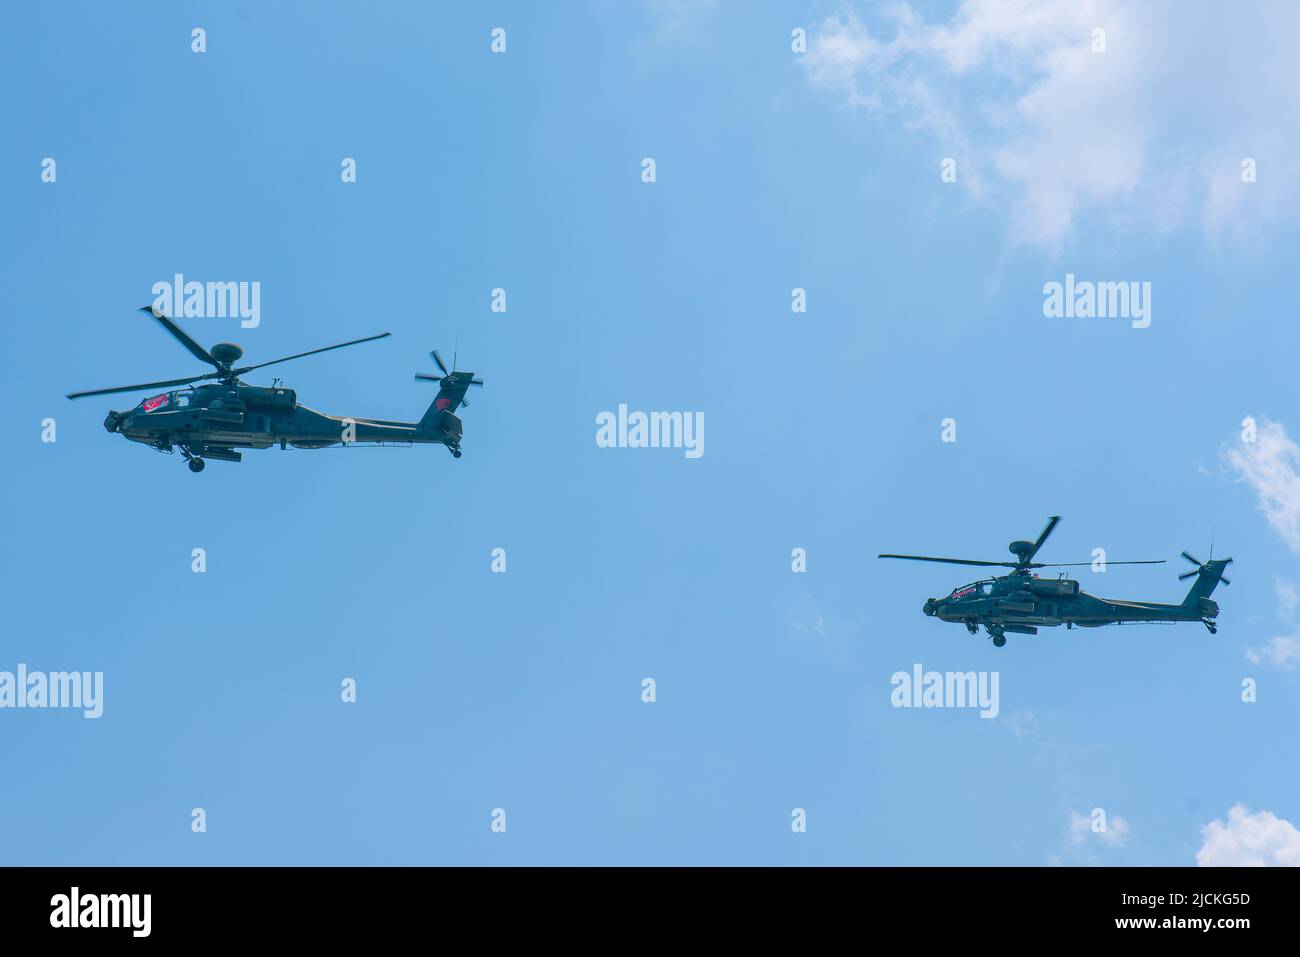 singapur, Singapur - 11. Aug 2018: HE AH-64D Apache ist ein Multi-Mission-Hubschrauber, der entwickelt wurde, um bei Tag, Nacht und widrigen Wetterbedingungen zu kämpfen und zu überleben Stockfoto